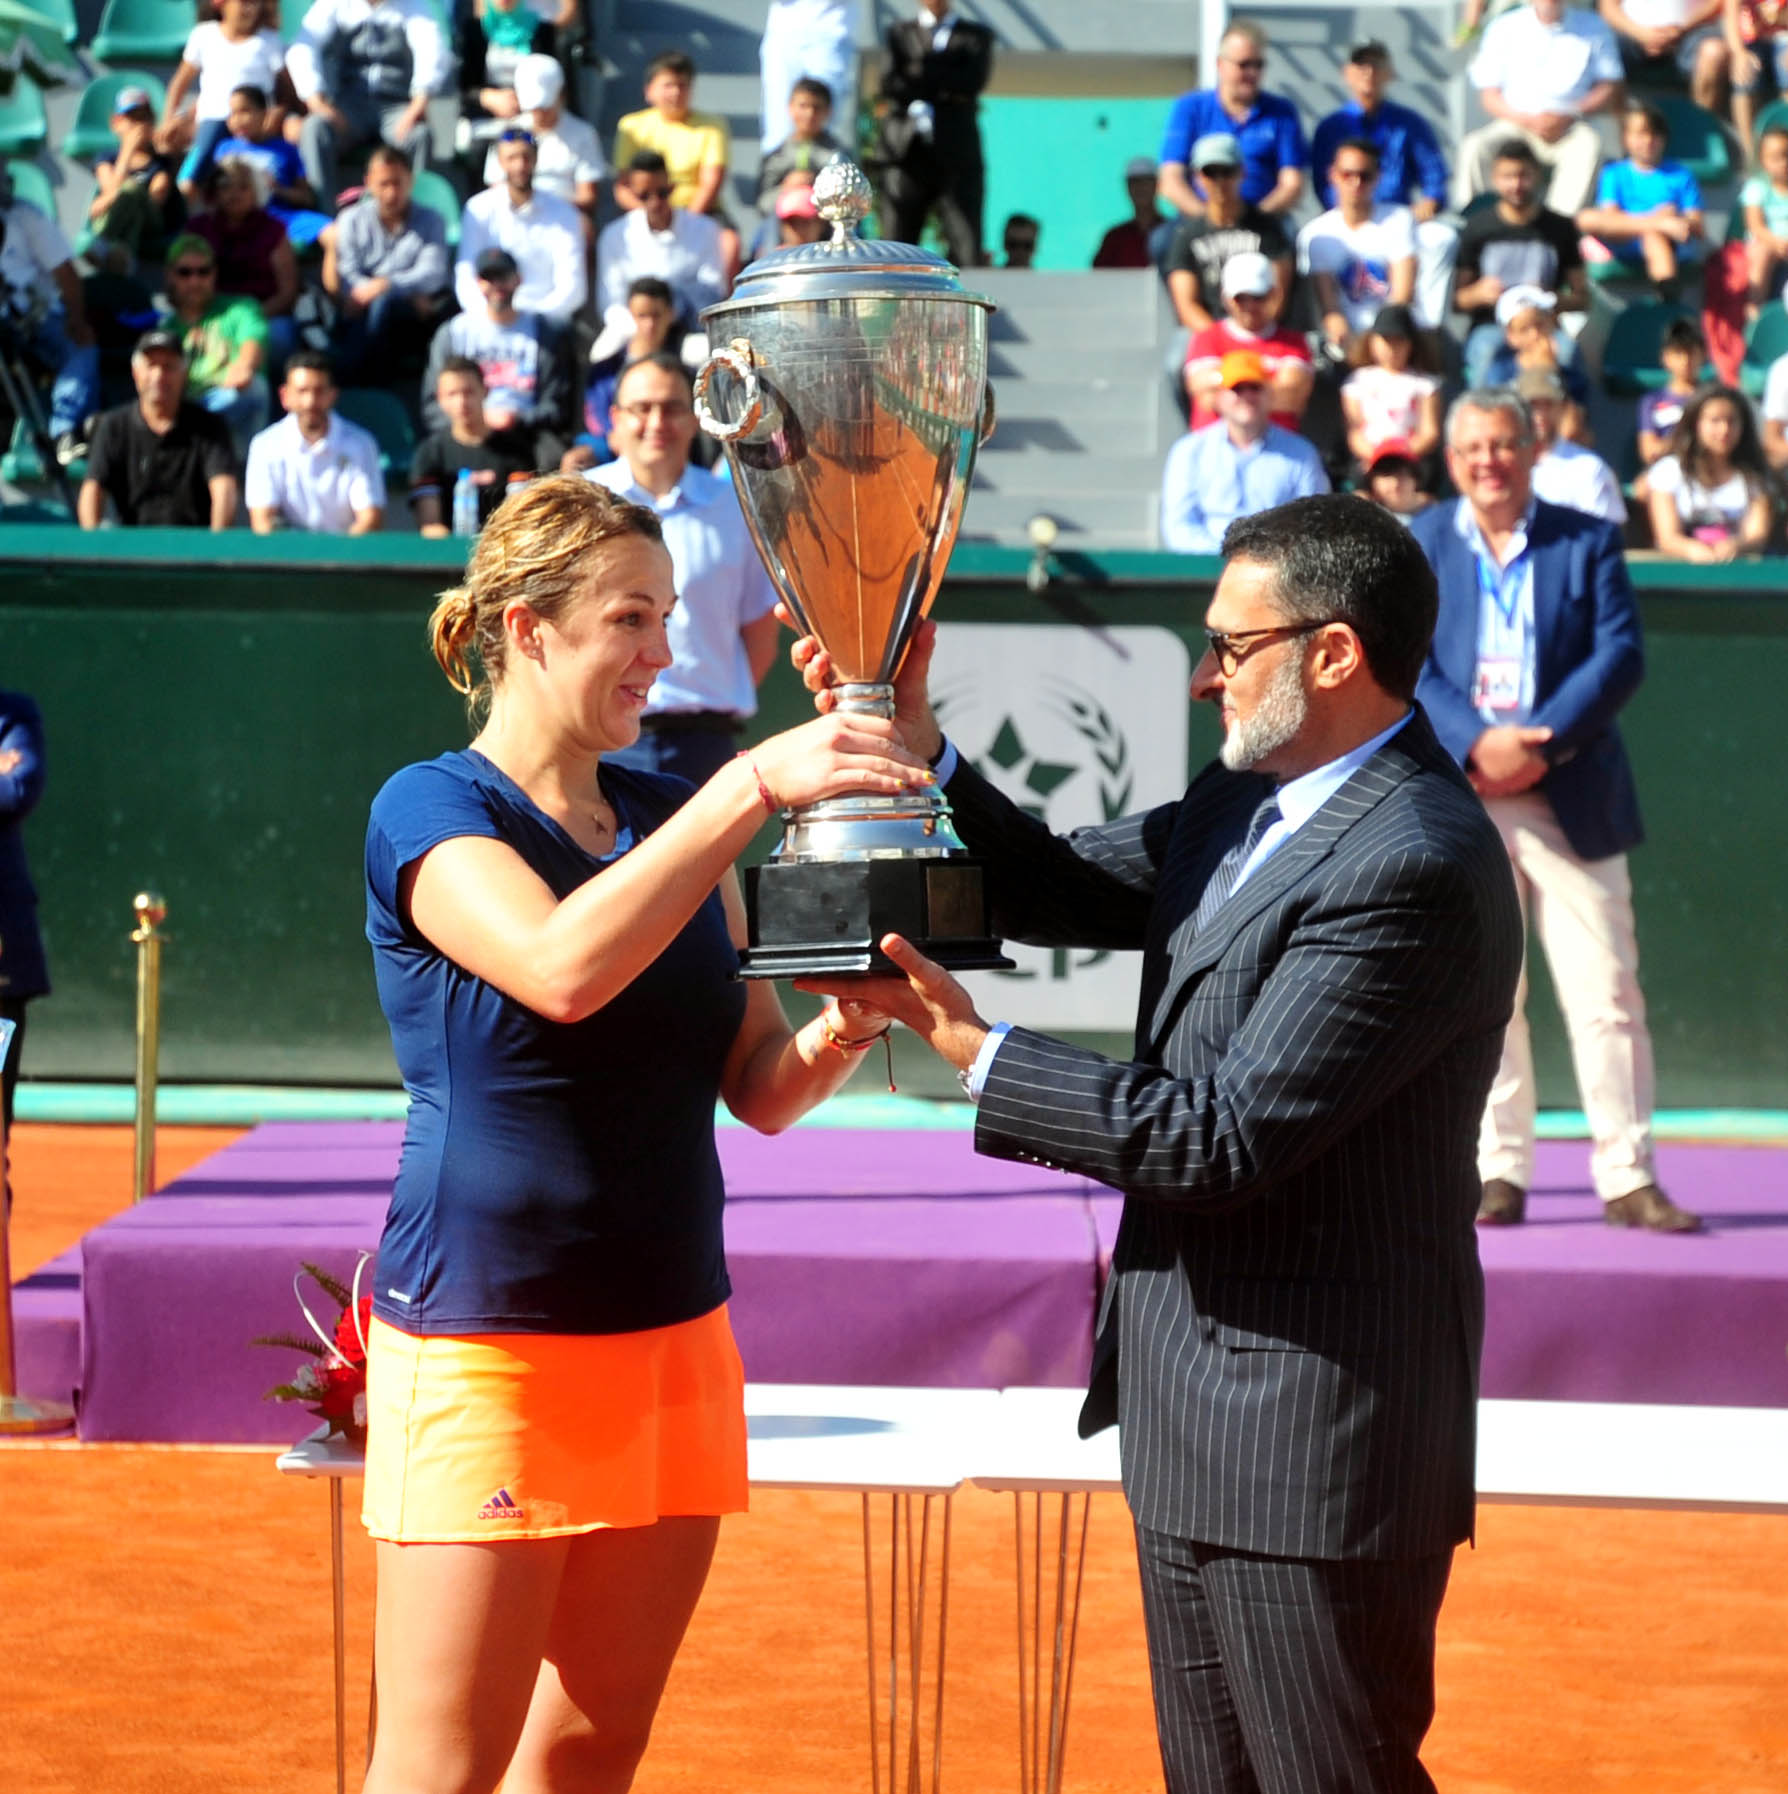 جائزة للا مريم لكرة المضرب: الروسية أناستازيا بافليوتشينكوفا تتوج بطلة للدورة 17